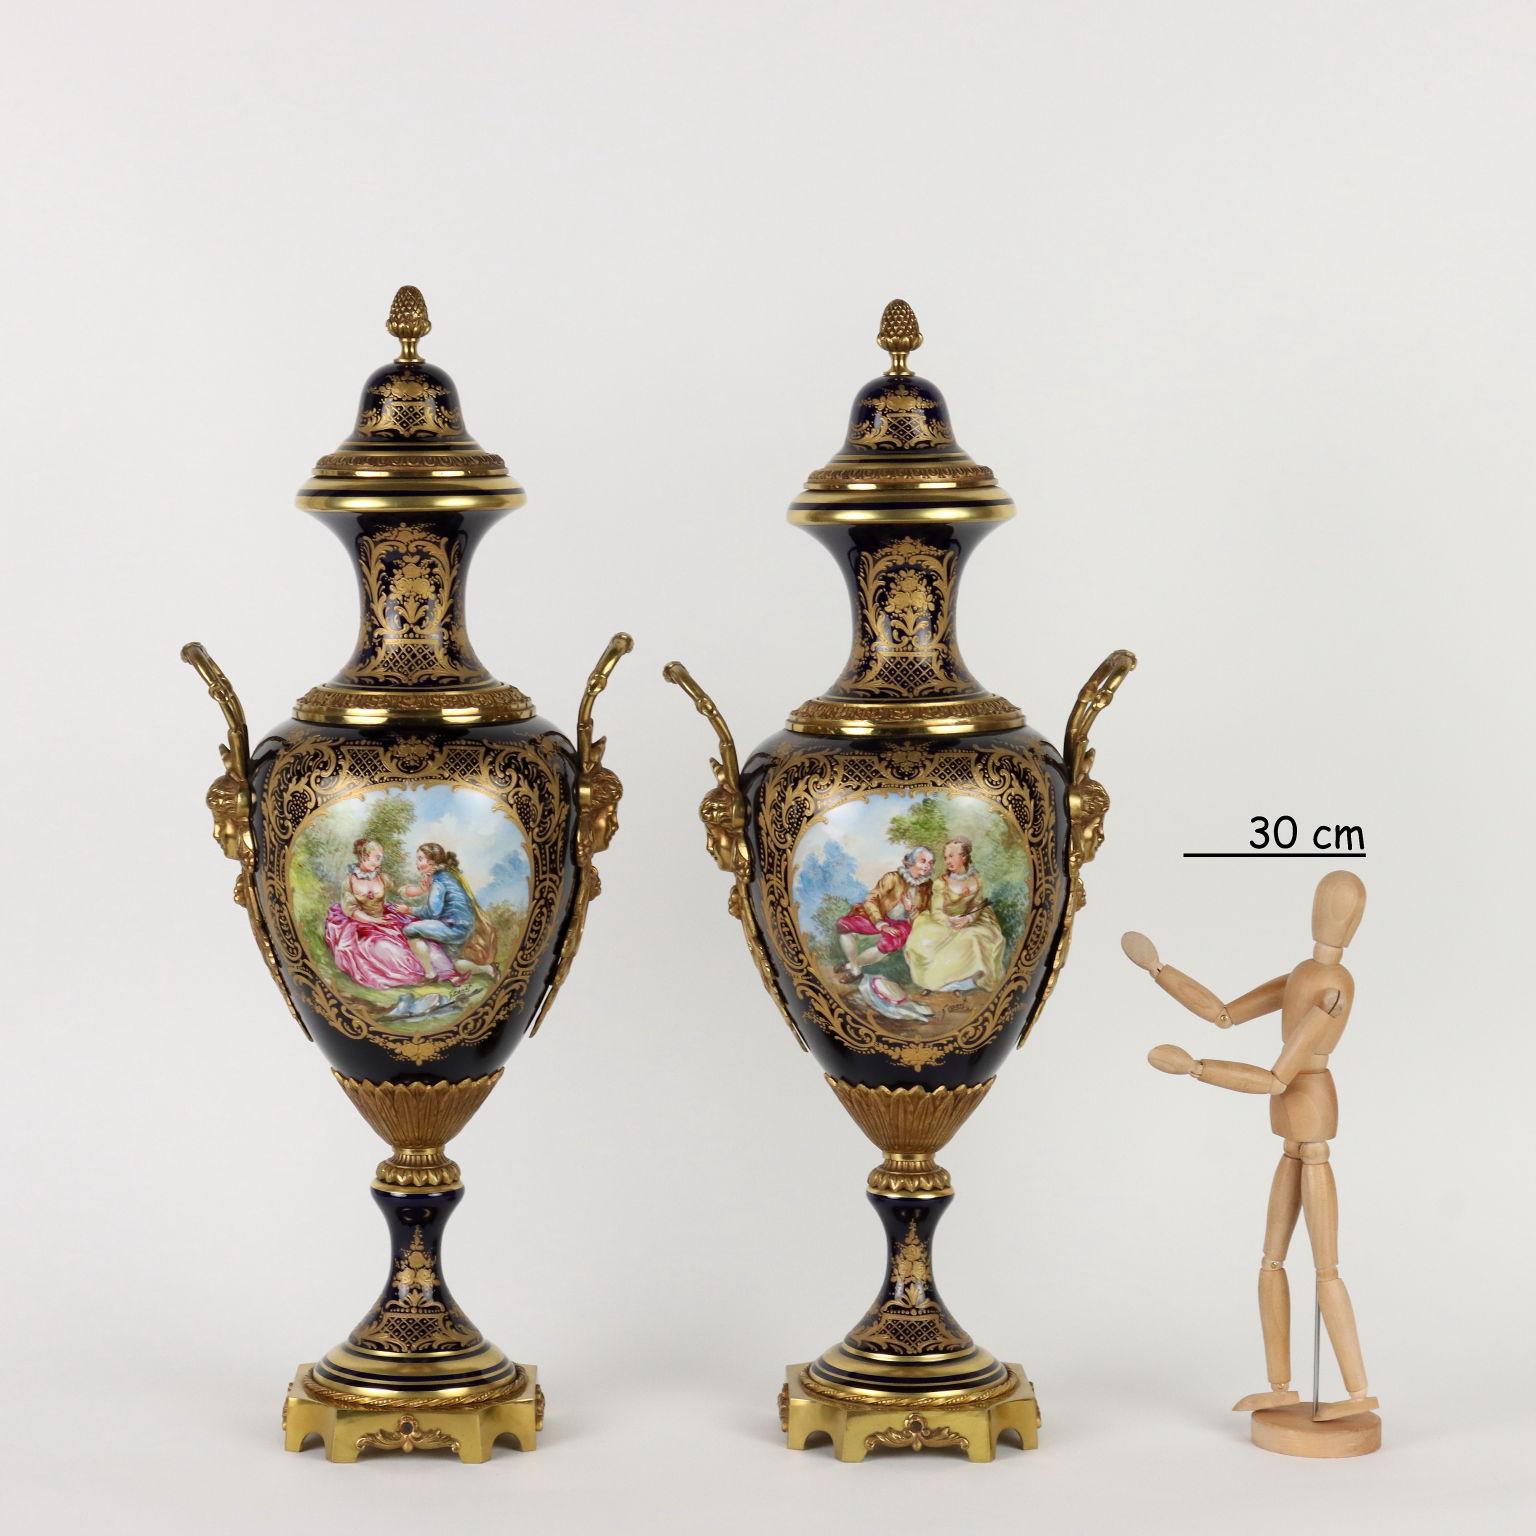 Paire de vases en porcelaine de Sèvres à décor de scènes amoureuses peintes en polychromie à l'intérieur de réserves et signés par Granet. Sur un fond bleu cobalt, les riches décorations dorées avec des volutes feuillues et des motifs végétaux